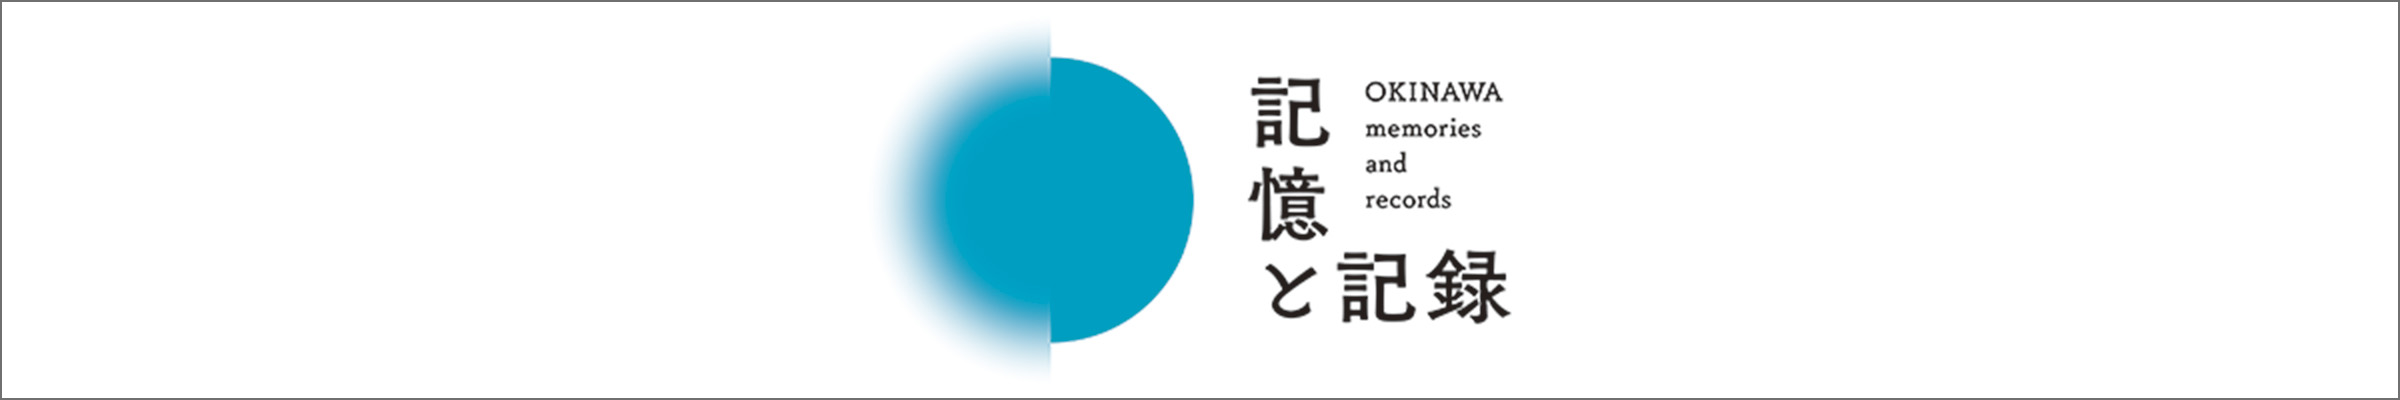 記憶と記録 OKINAWA memories and records